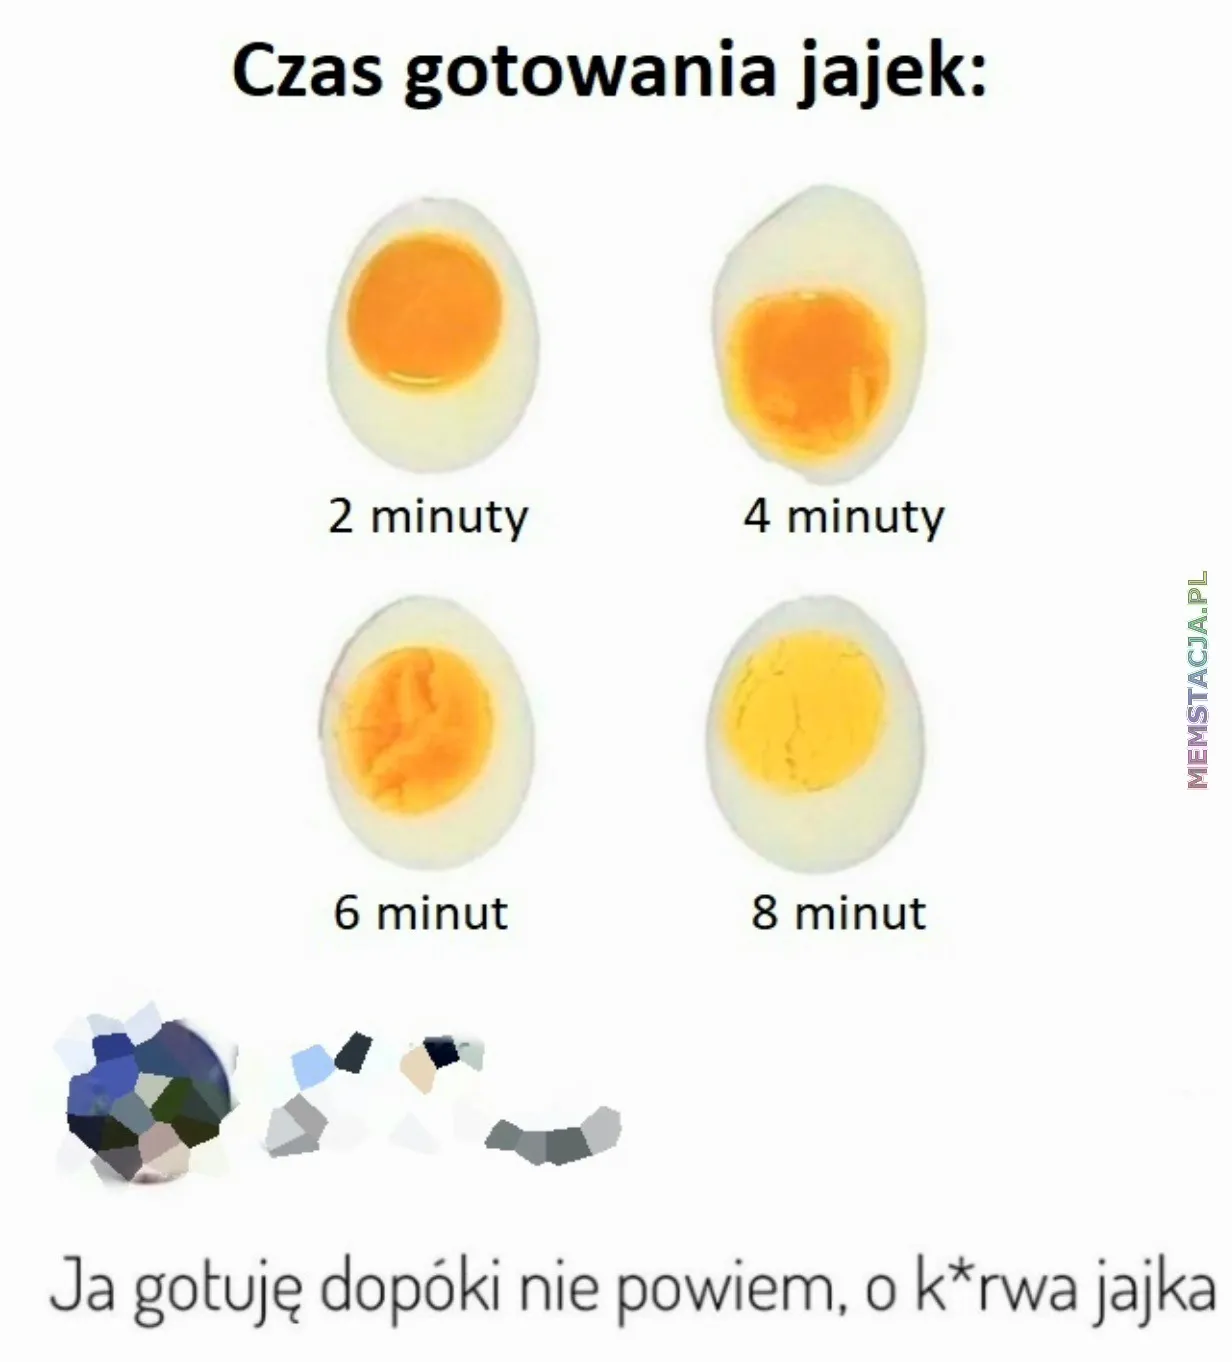 Zdjęcia jajek po danym czasie gotowania: 'Ja gotuję dopóki nie powiem, o k*rwa jajka'